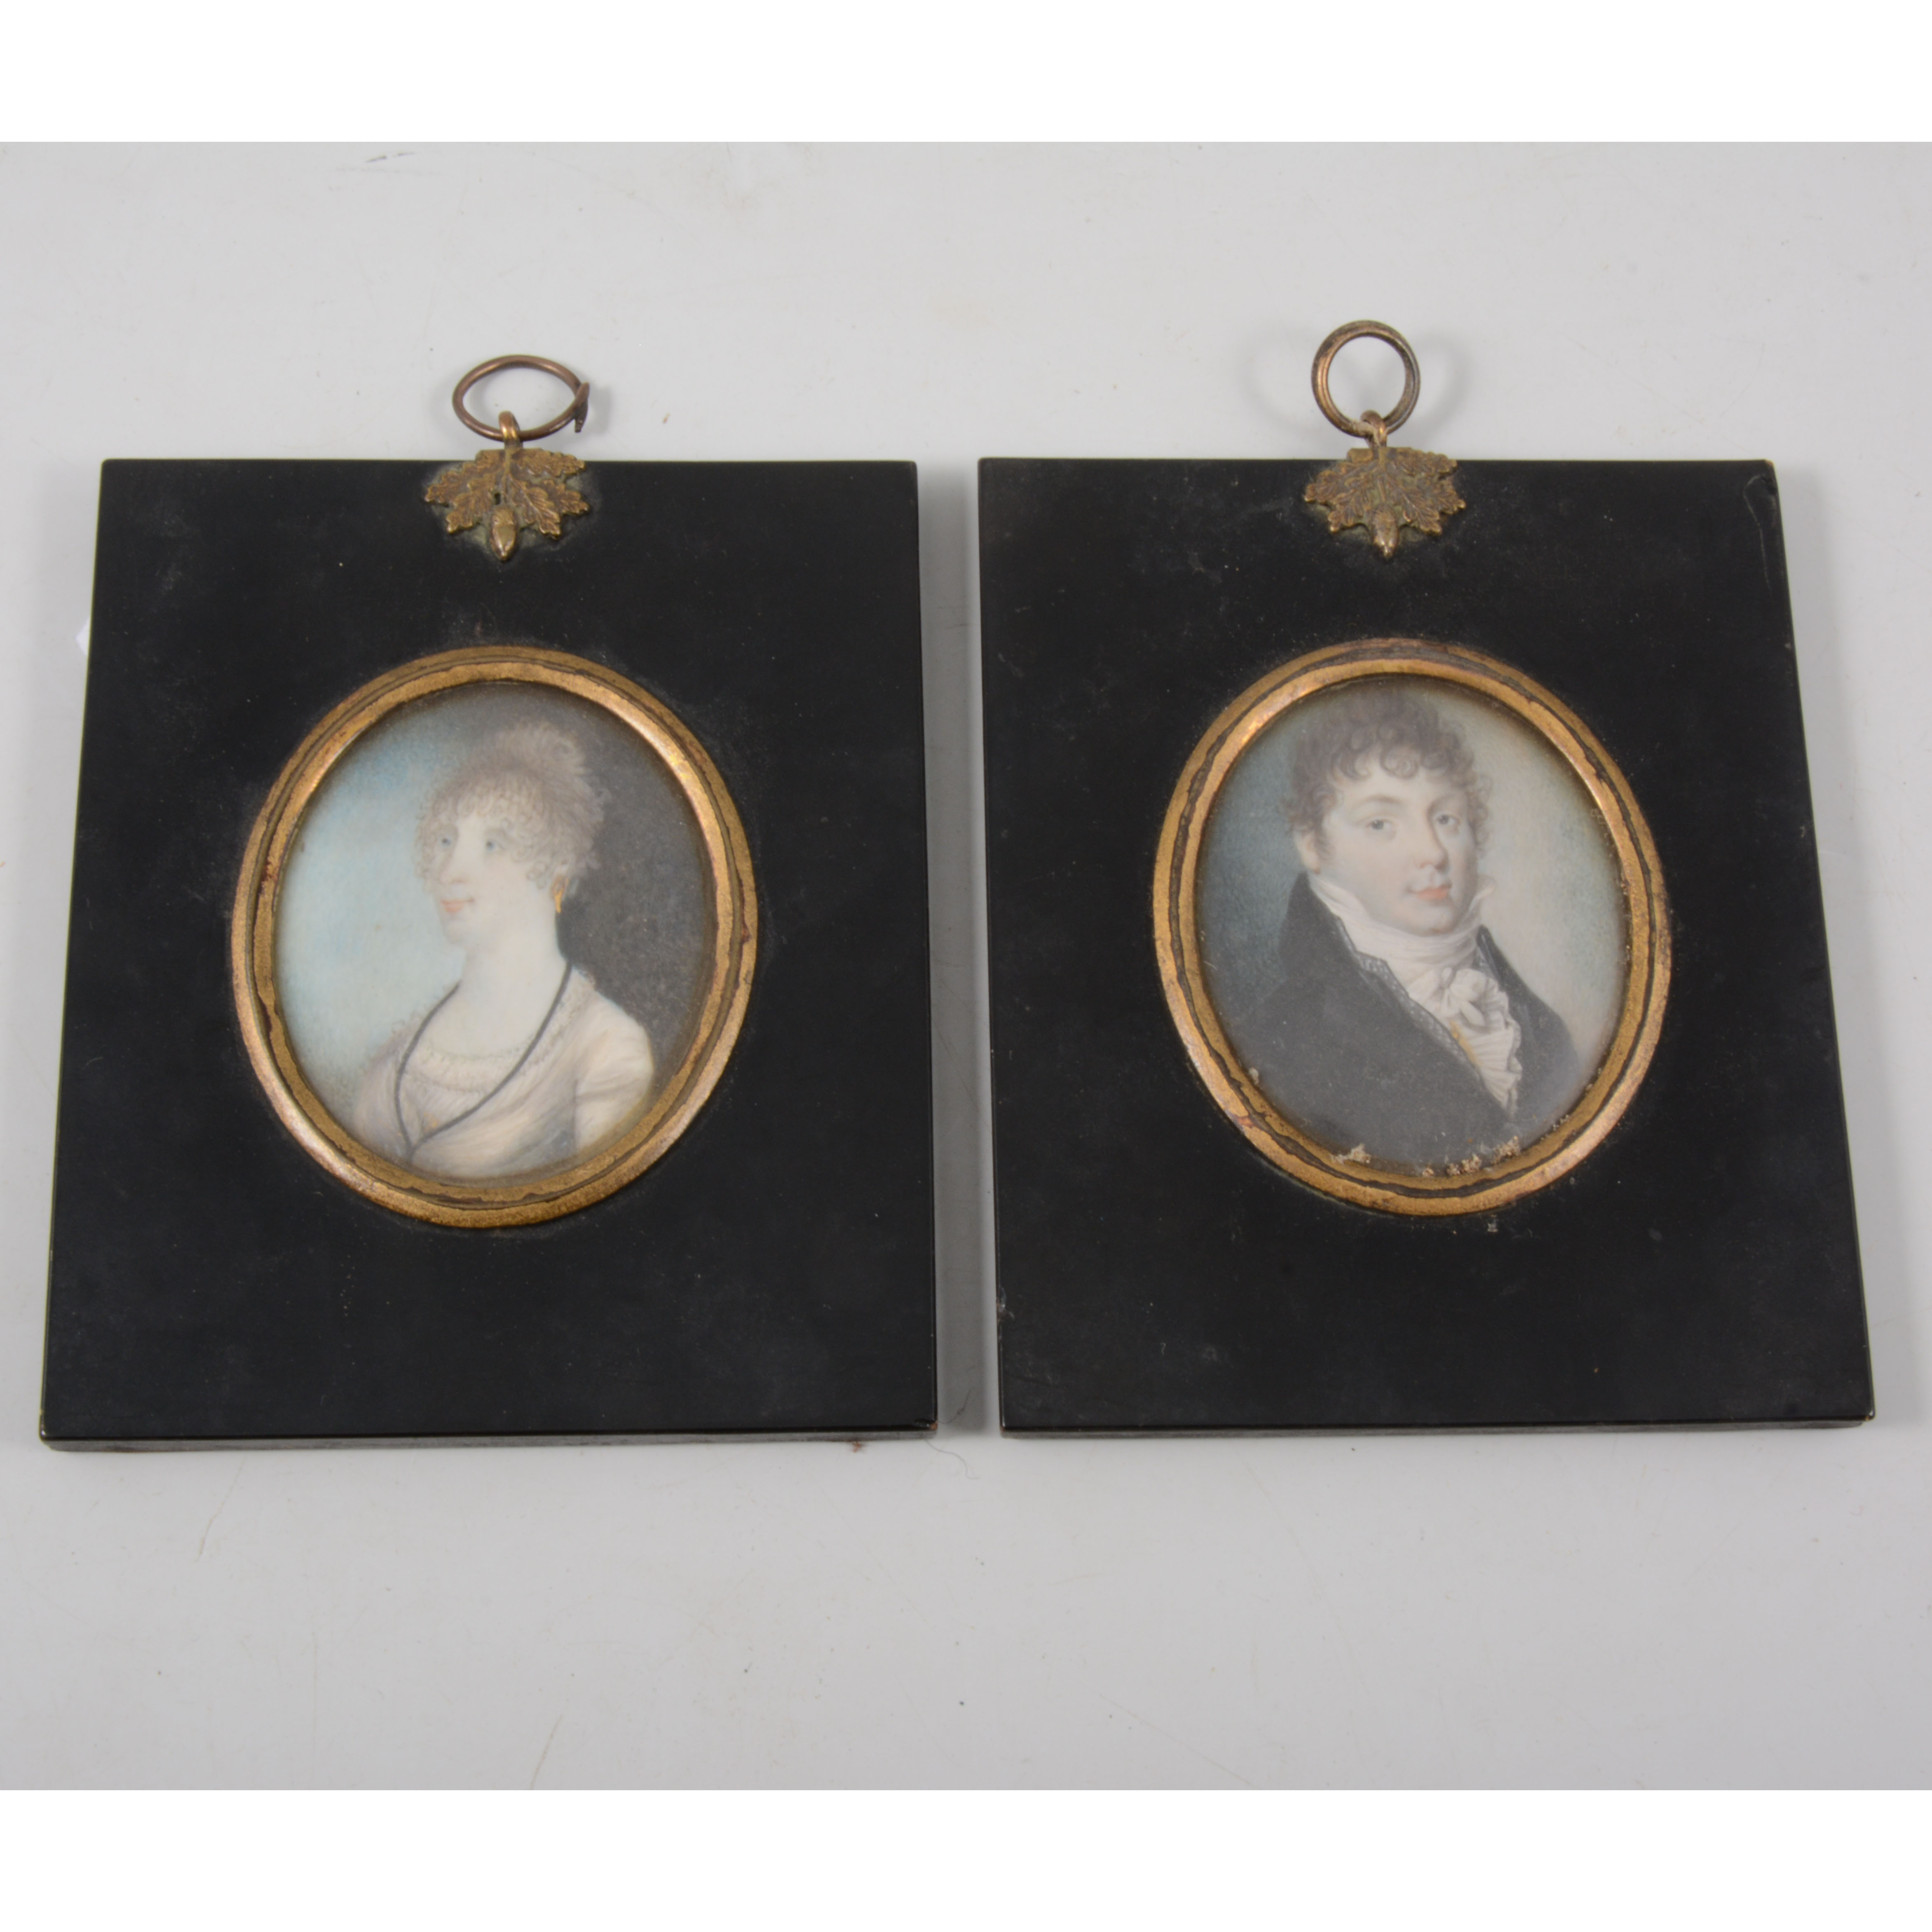 Regency oval portrait miniature, James Newbon, shoulders length, 7cm x 5.